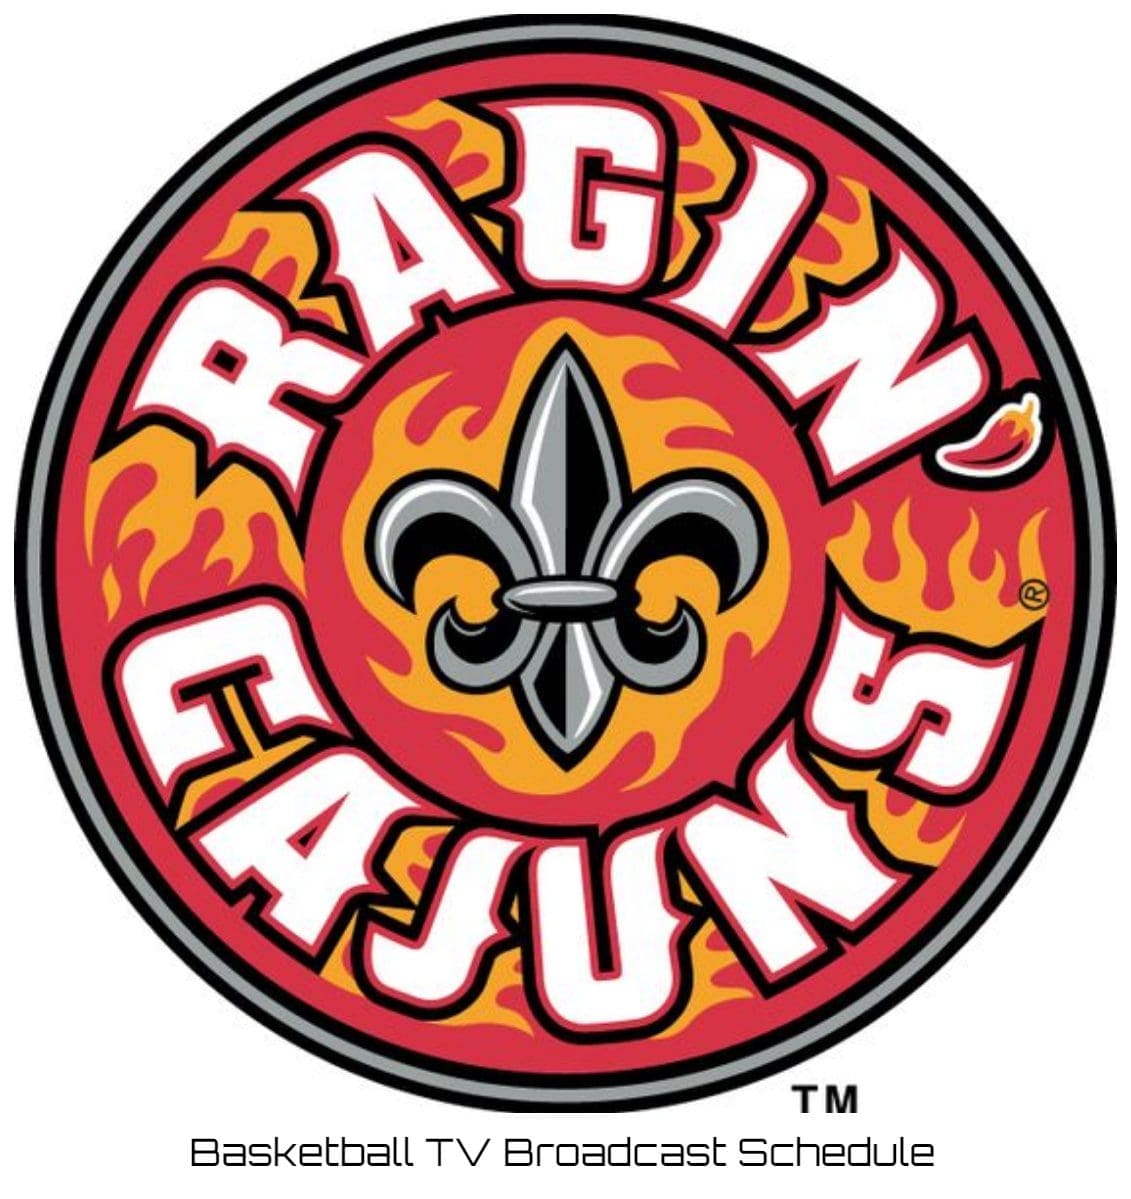 Louisiana Ragin' Cajuns Basketball TV Broadcast Schedule